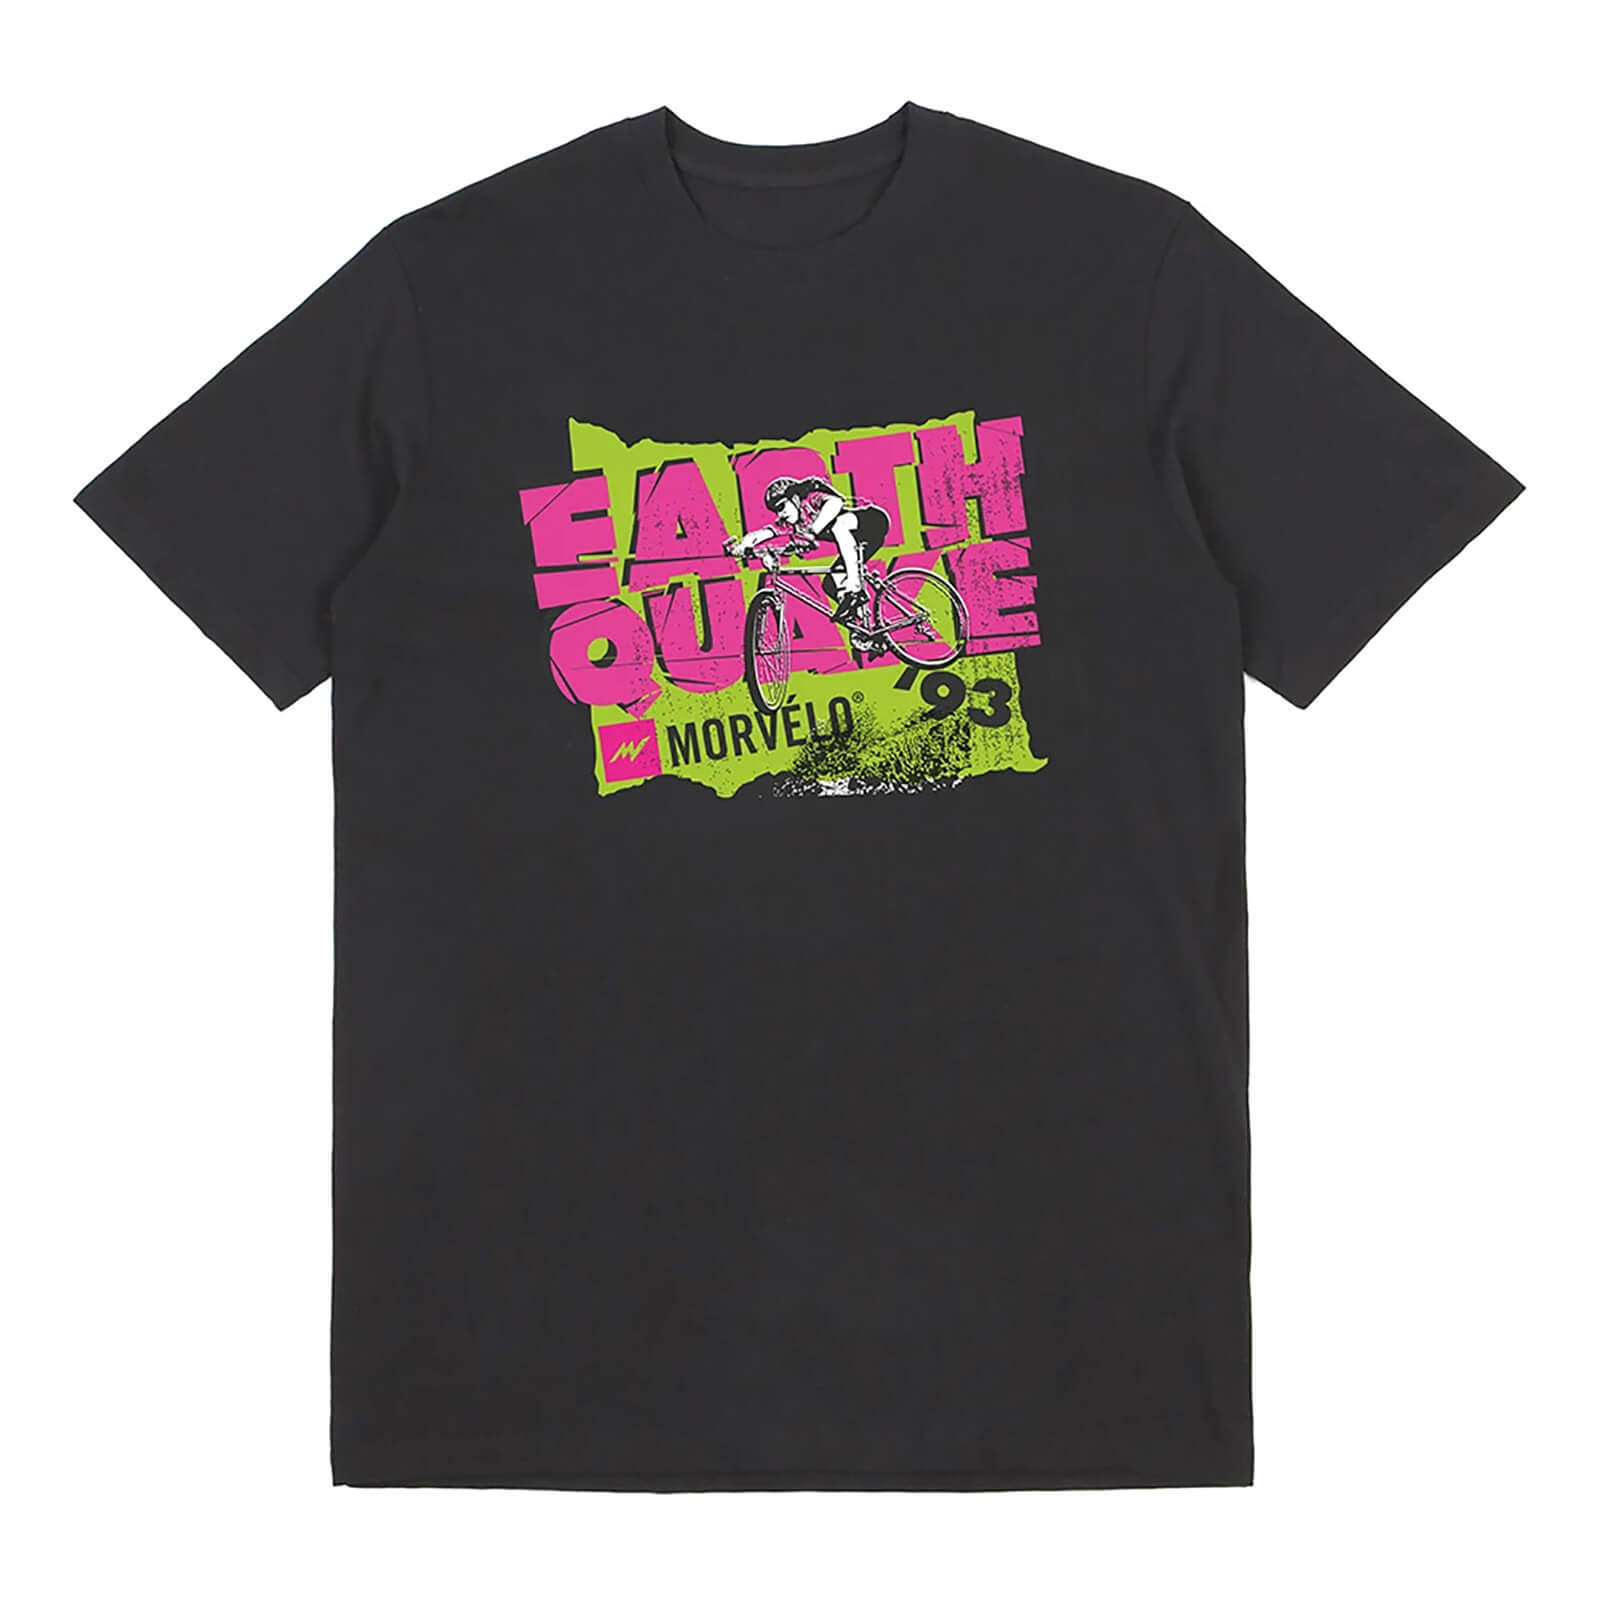 Morvelo Earthquake T-Shirt - L